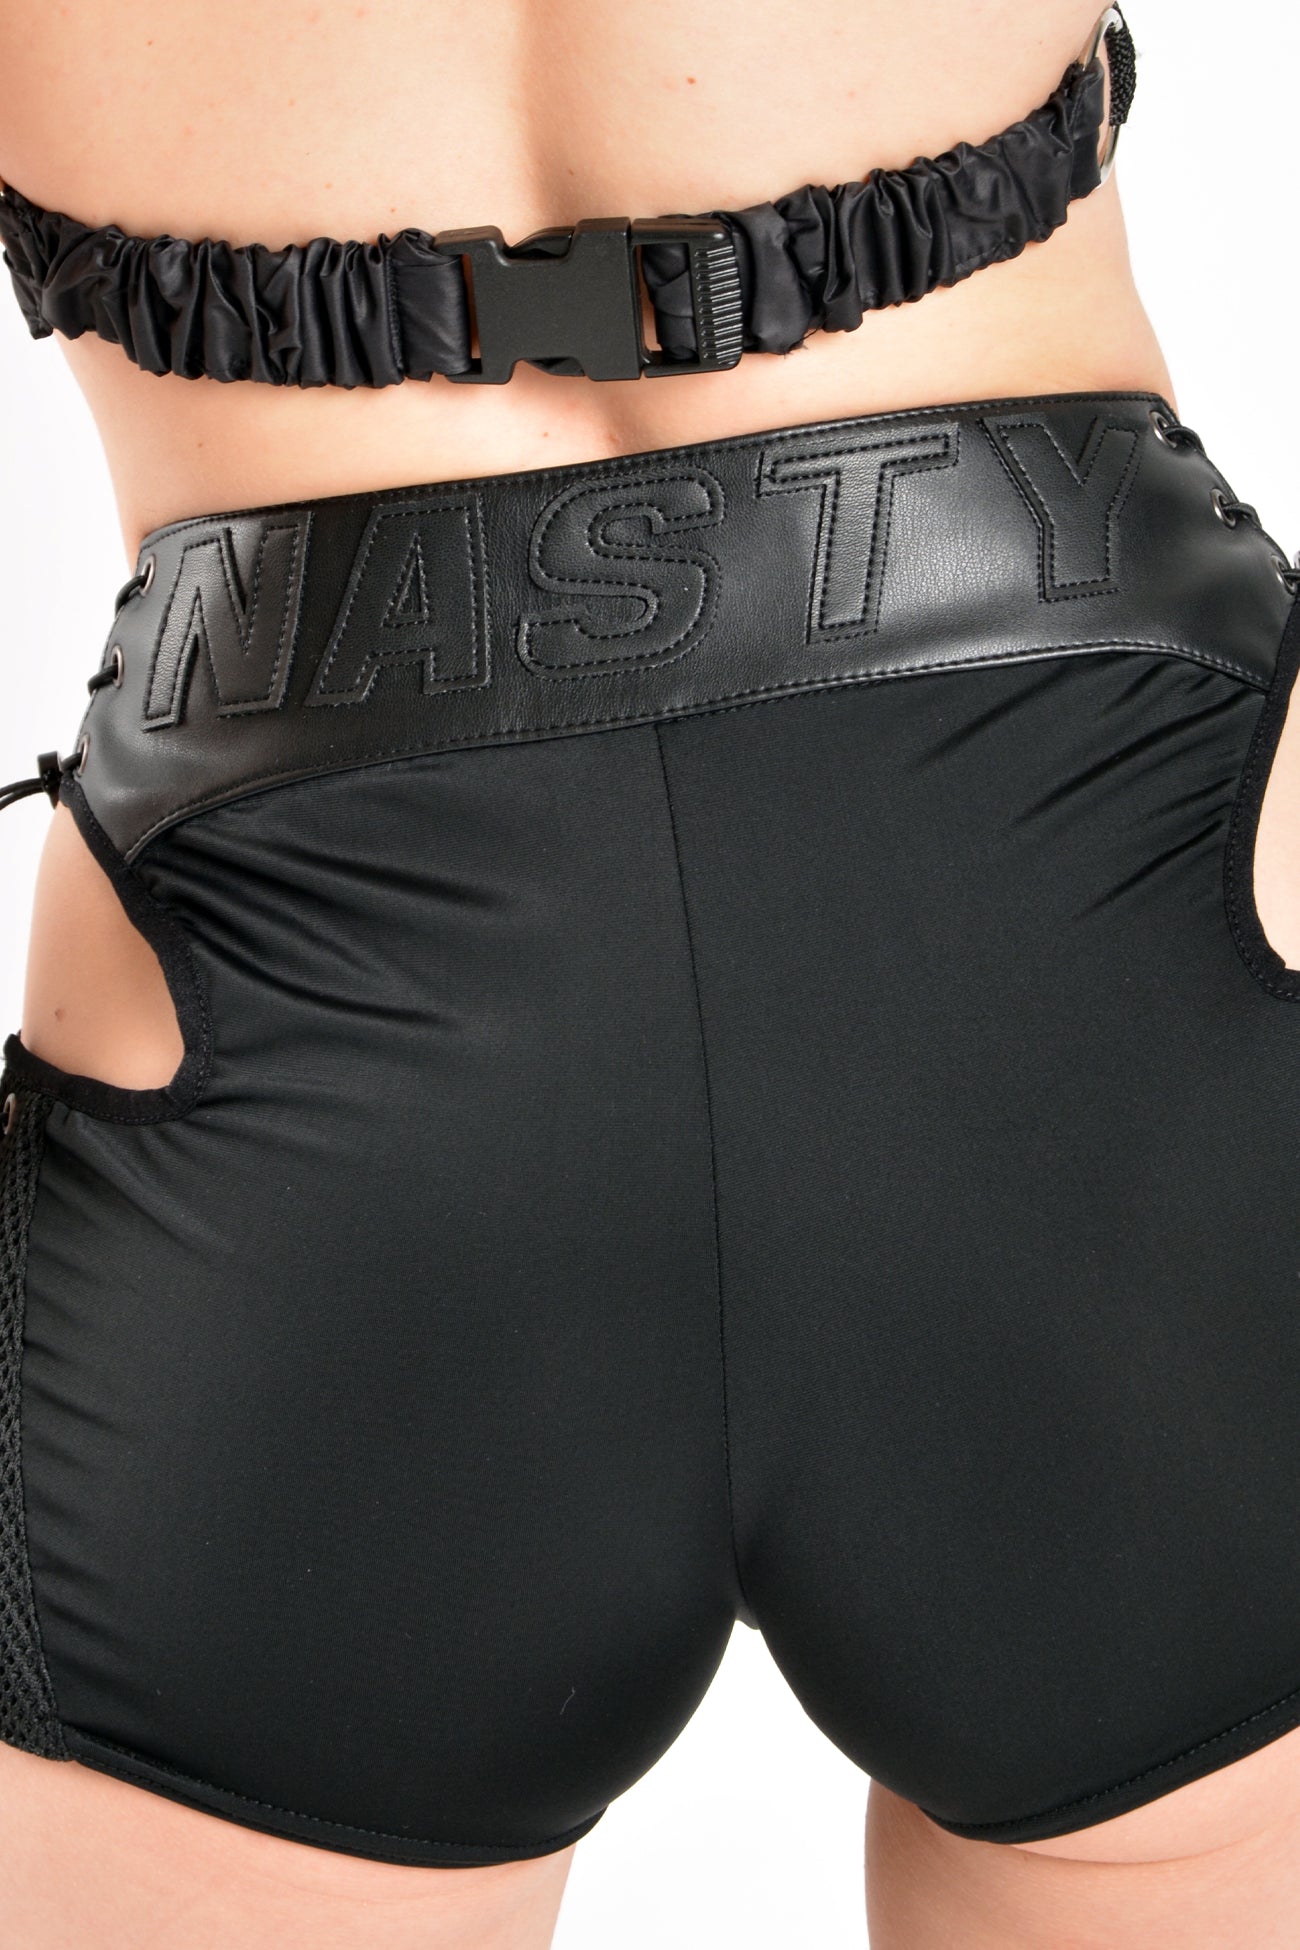 NAMILIA moto shorts - XS, black